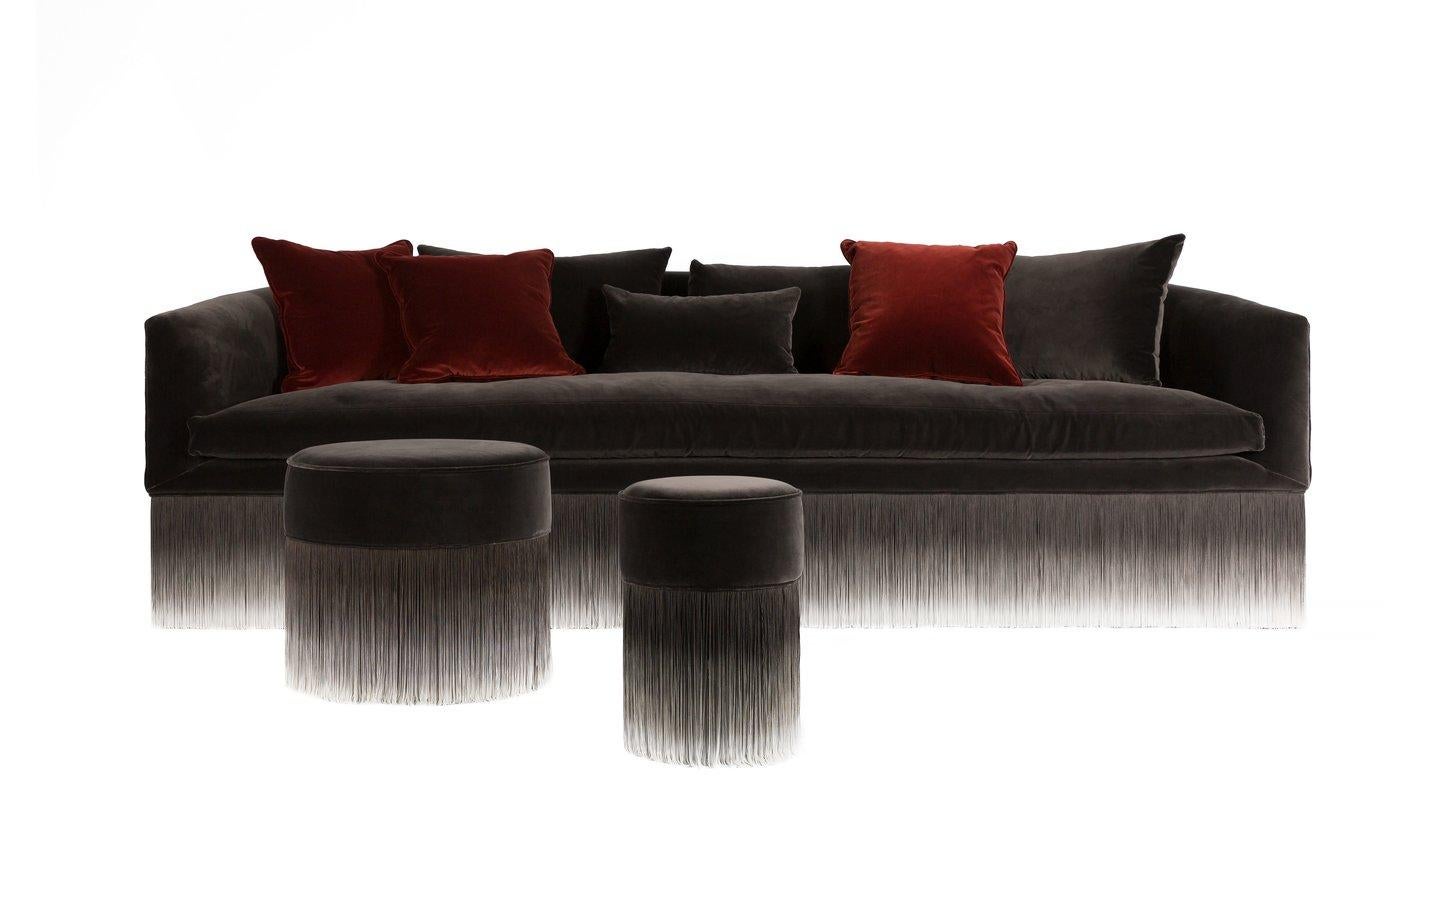 Ein elegantes und bequemes Sofa, gekleidet in herzerwärmenden Samt, sanft schwebend auf langen sinnlichen Fransen, die es schmücken und aufwerten und eine frische Brise von Leichtigkeit im ganzen Raum erzeugen: das ist For You von Lorenza Bozzoli.